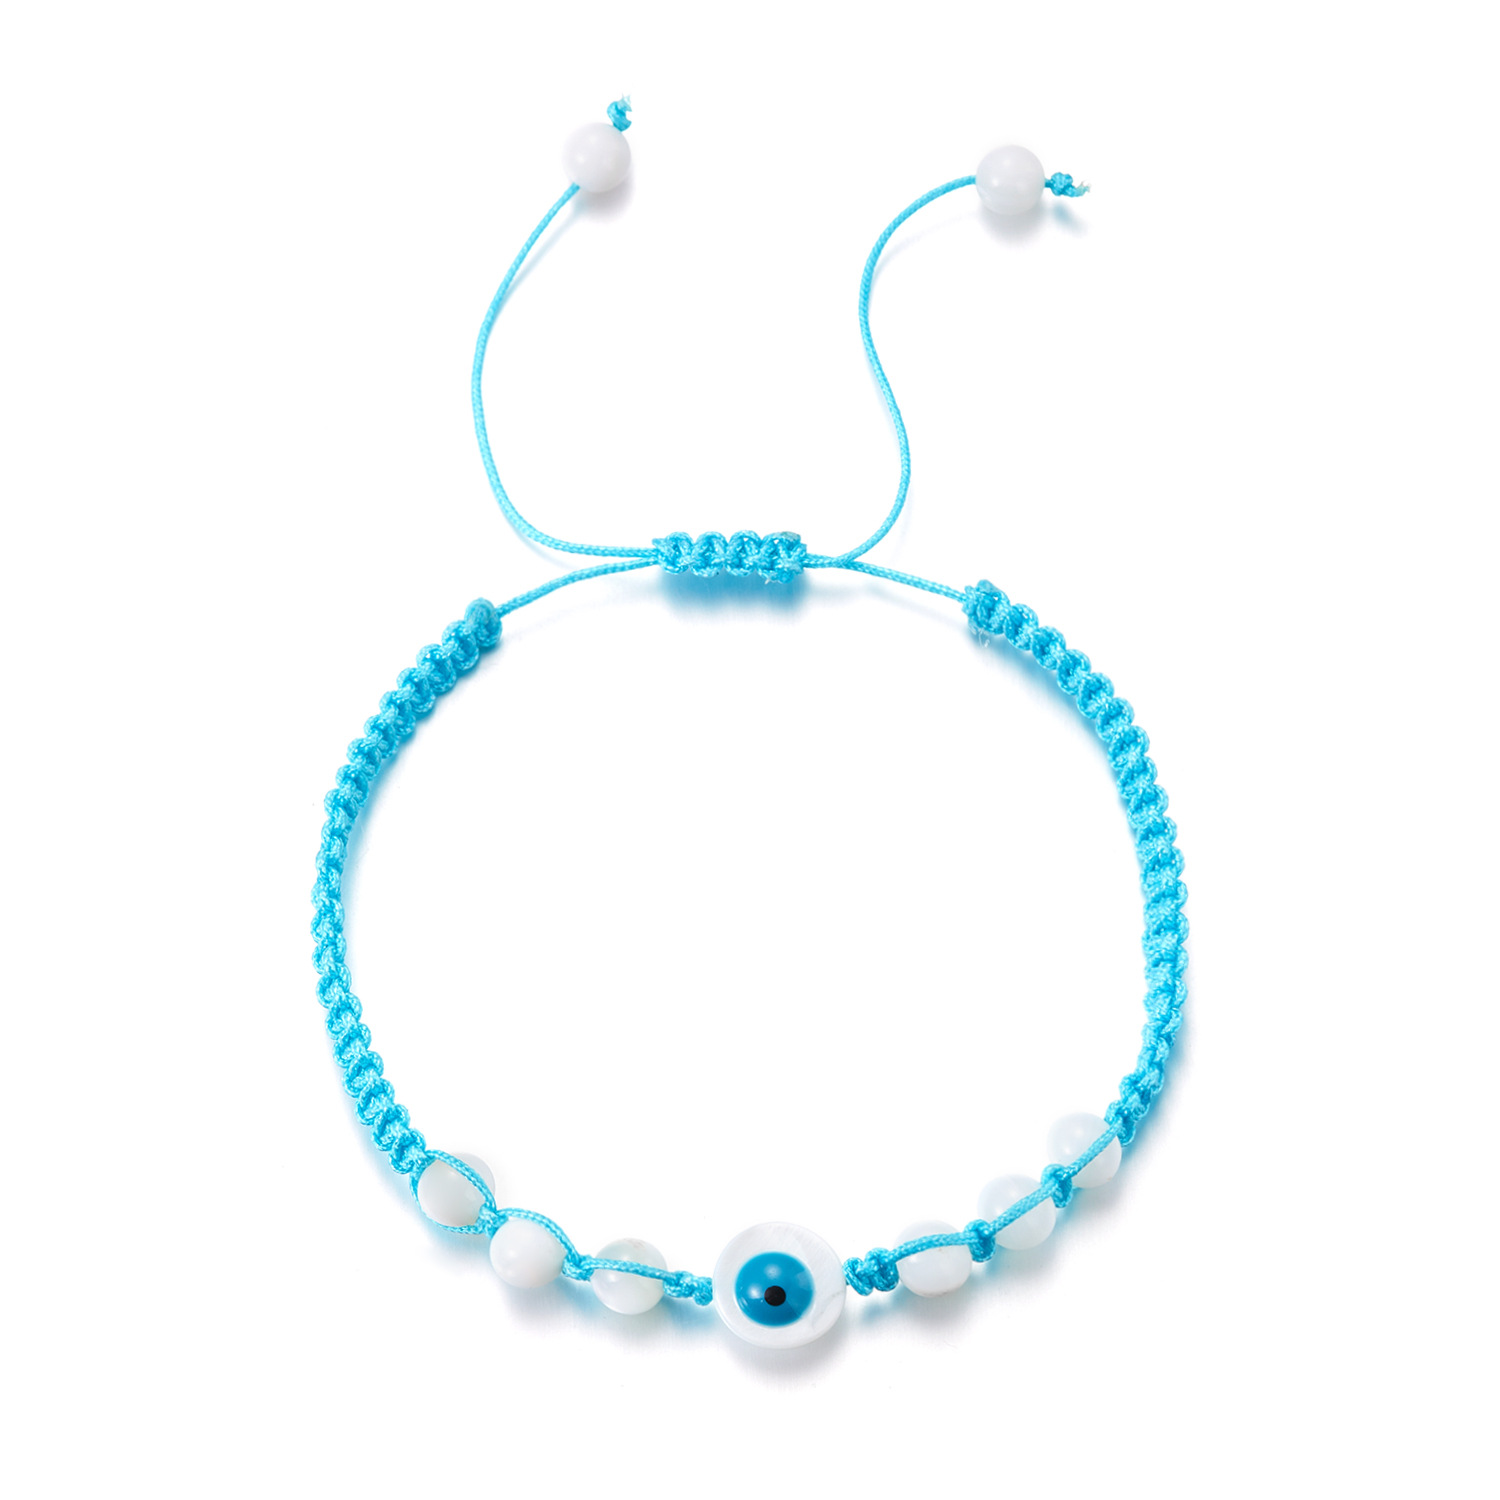 2:Light blue eye bracelet